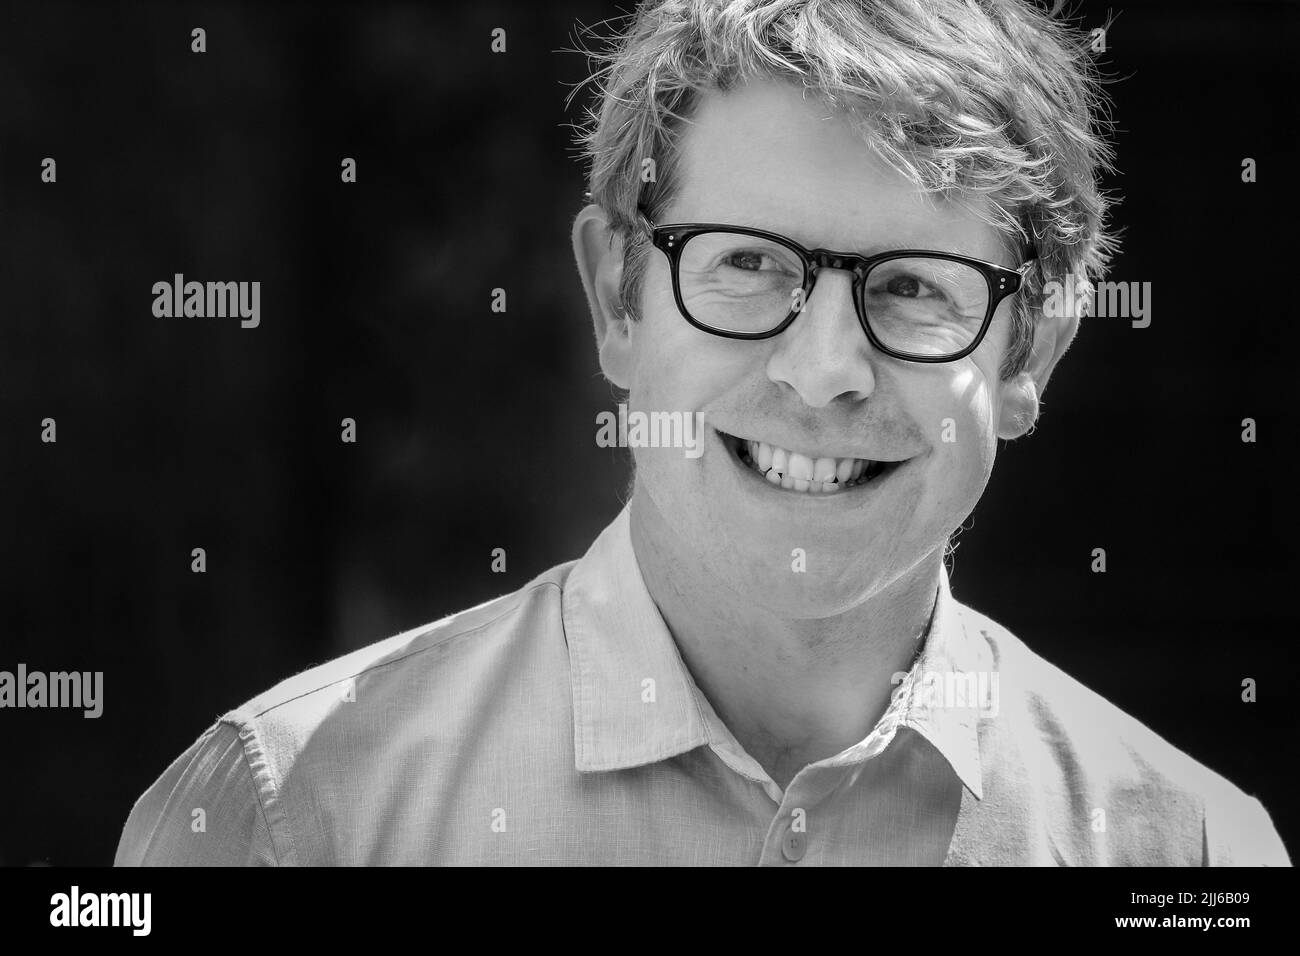 Josh Widdicombe, Comedian und TV-Moderator, lächelnd, Nahaufnahme des Gesichts Stockfoto